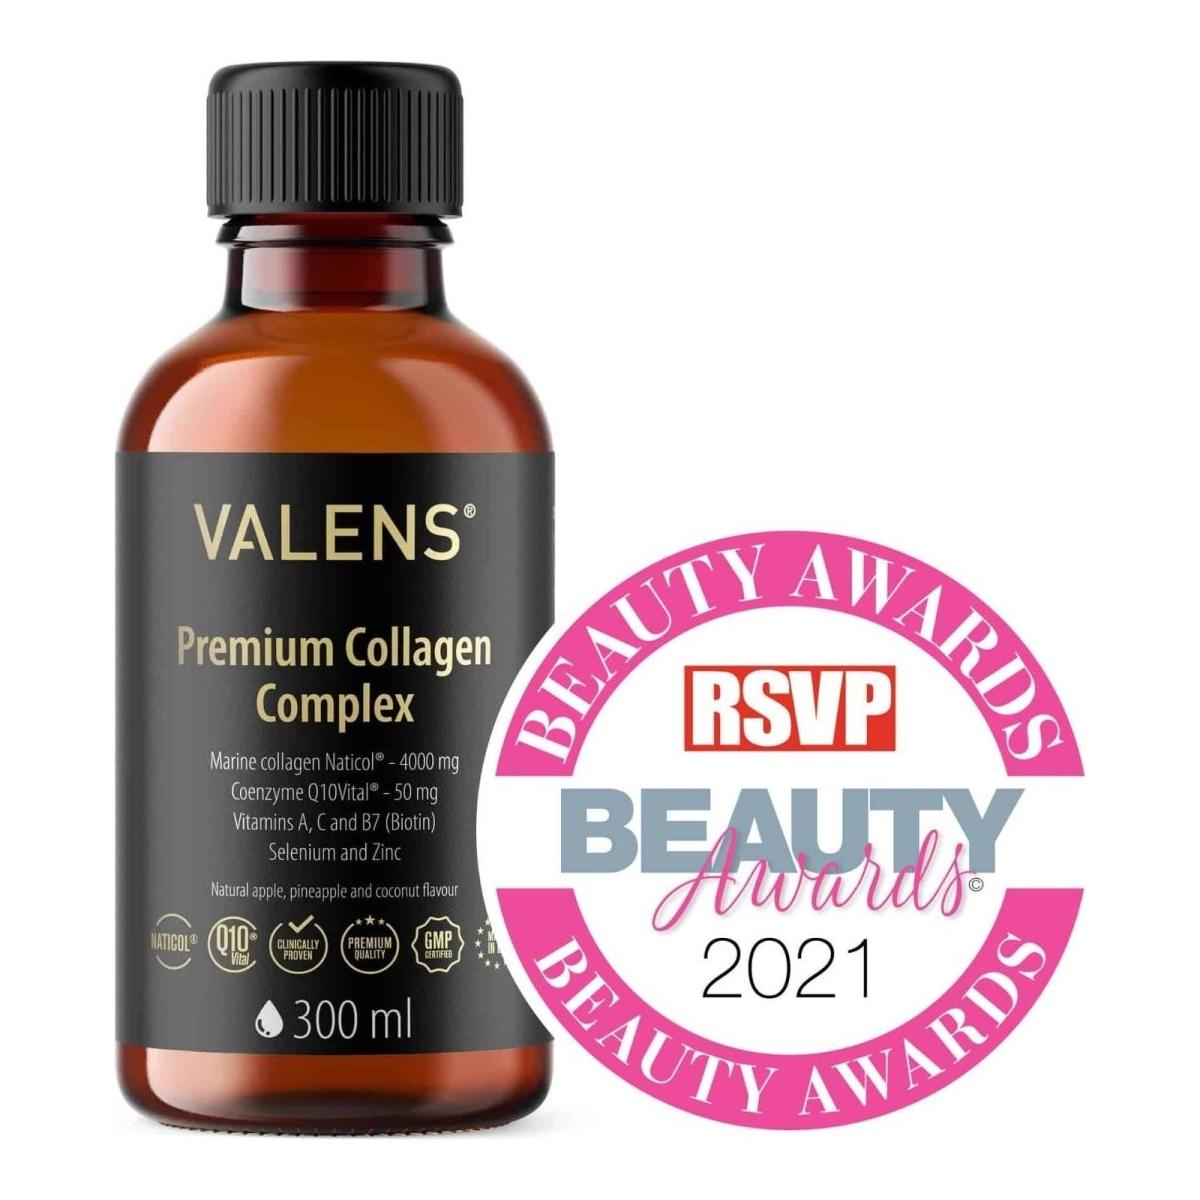 Valens | Premium Collagen Complex | 300ml - DG International Ventures Limited